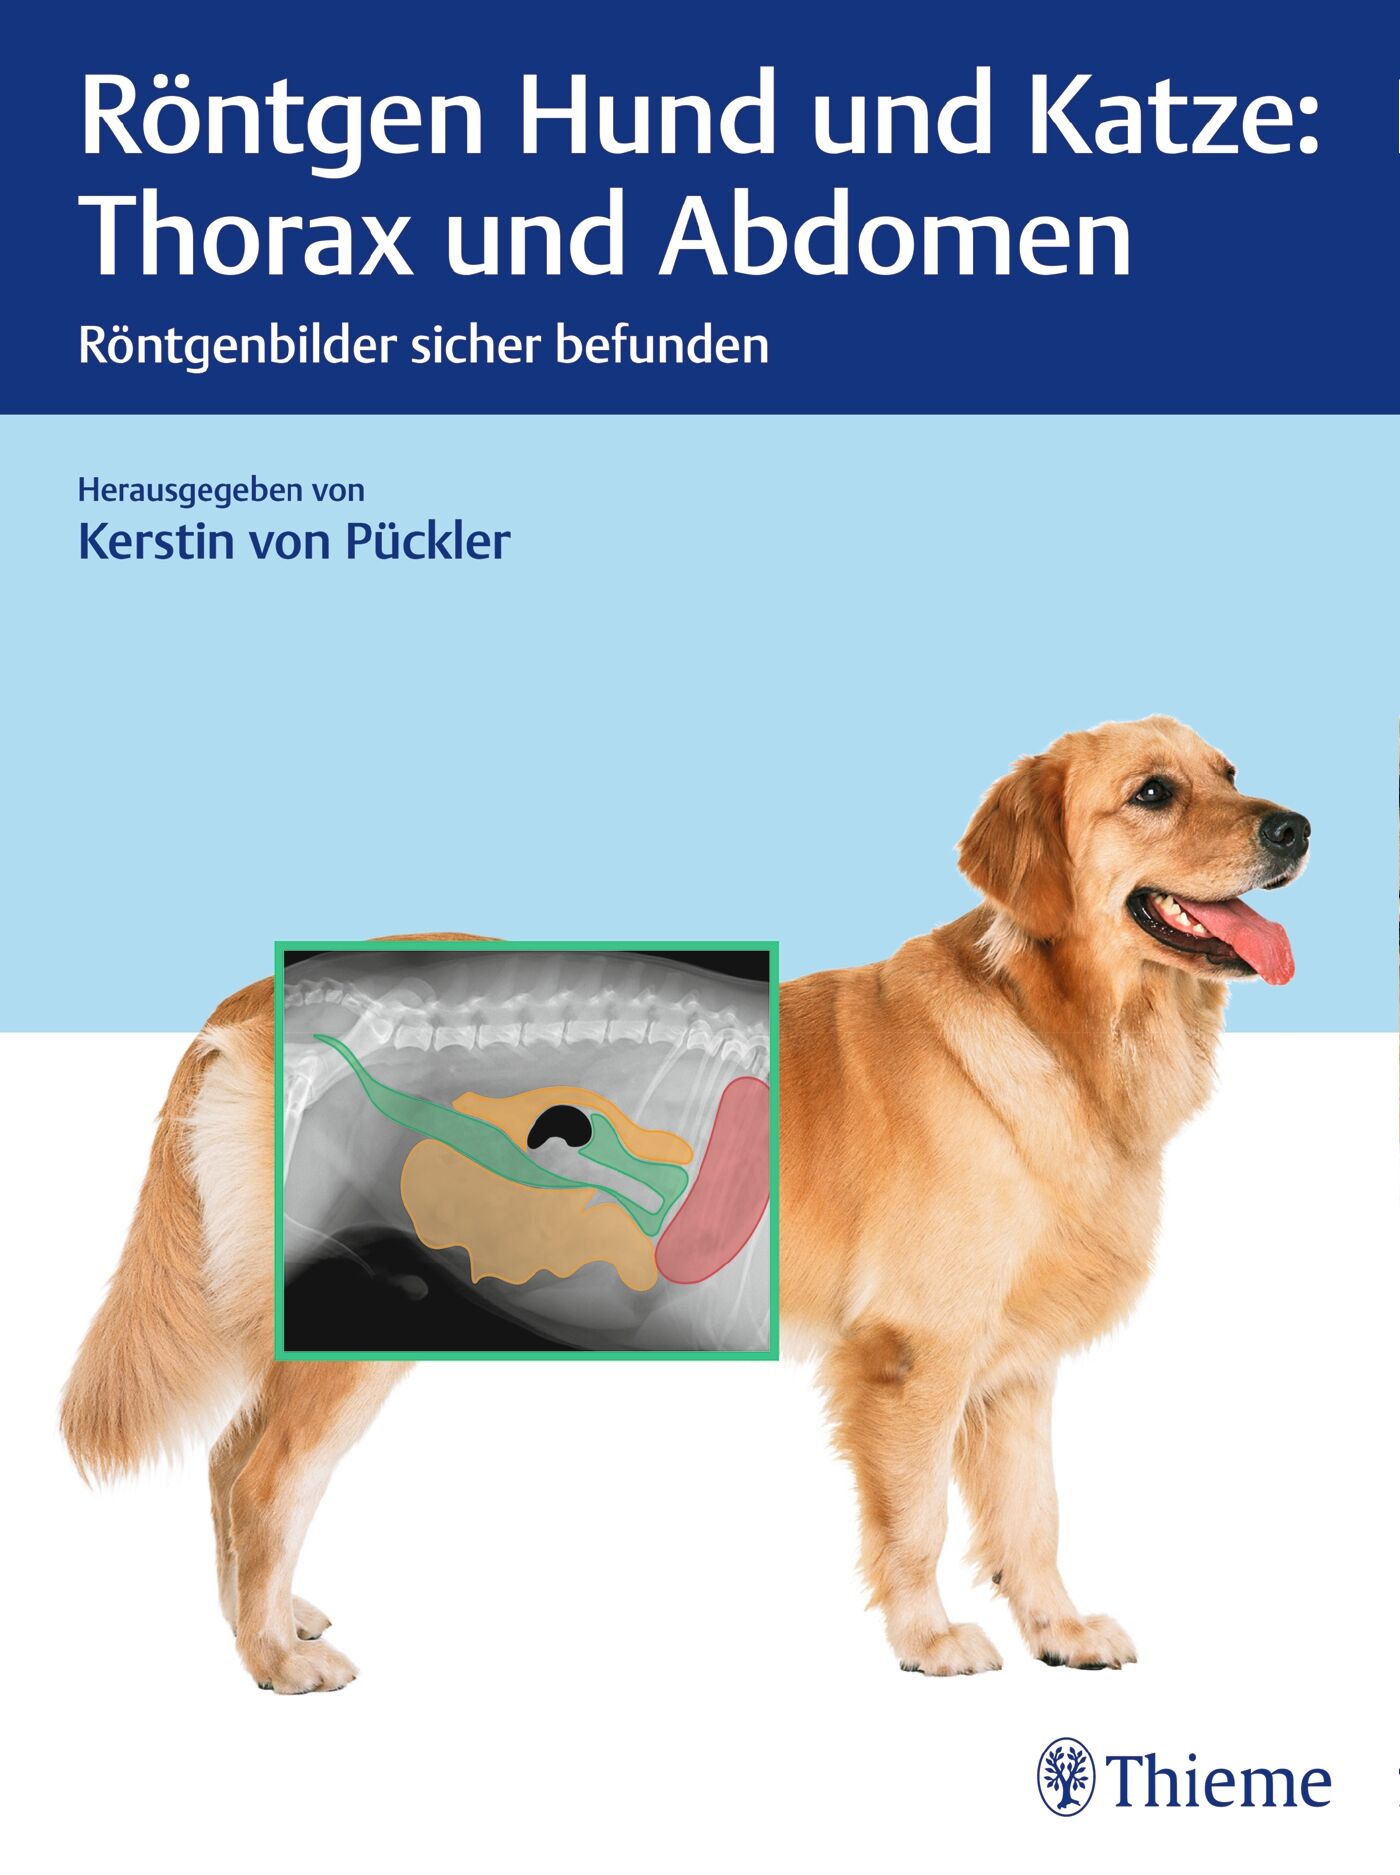 Röntgen Hund und Katze: Thorax und Abdomen, 9783132425408